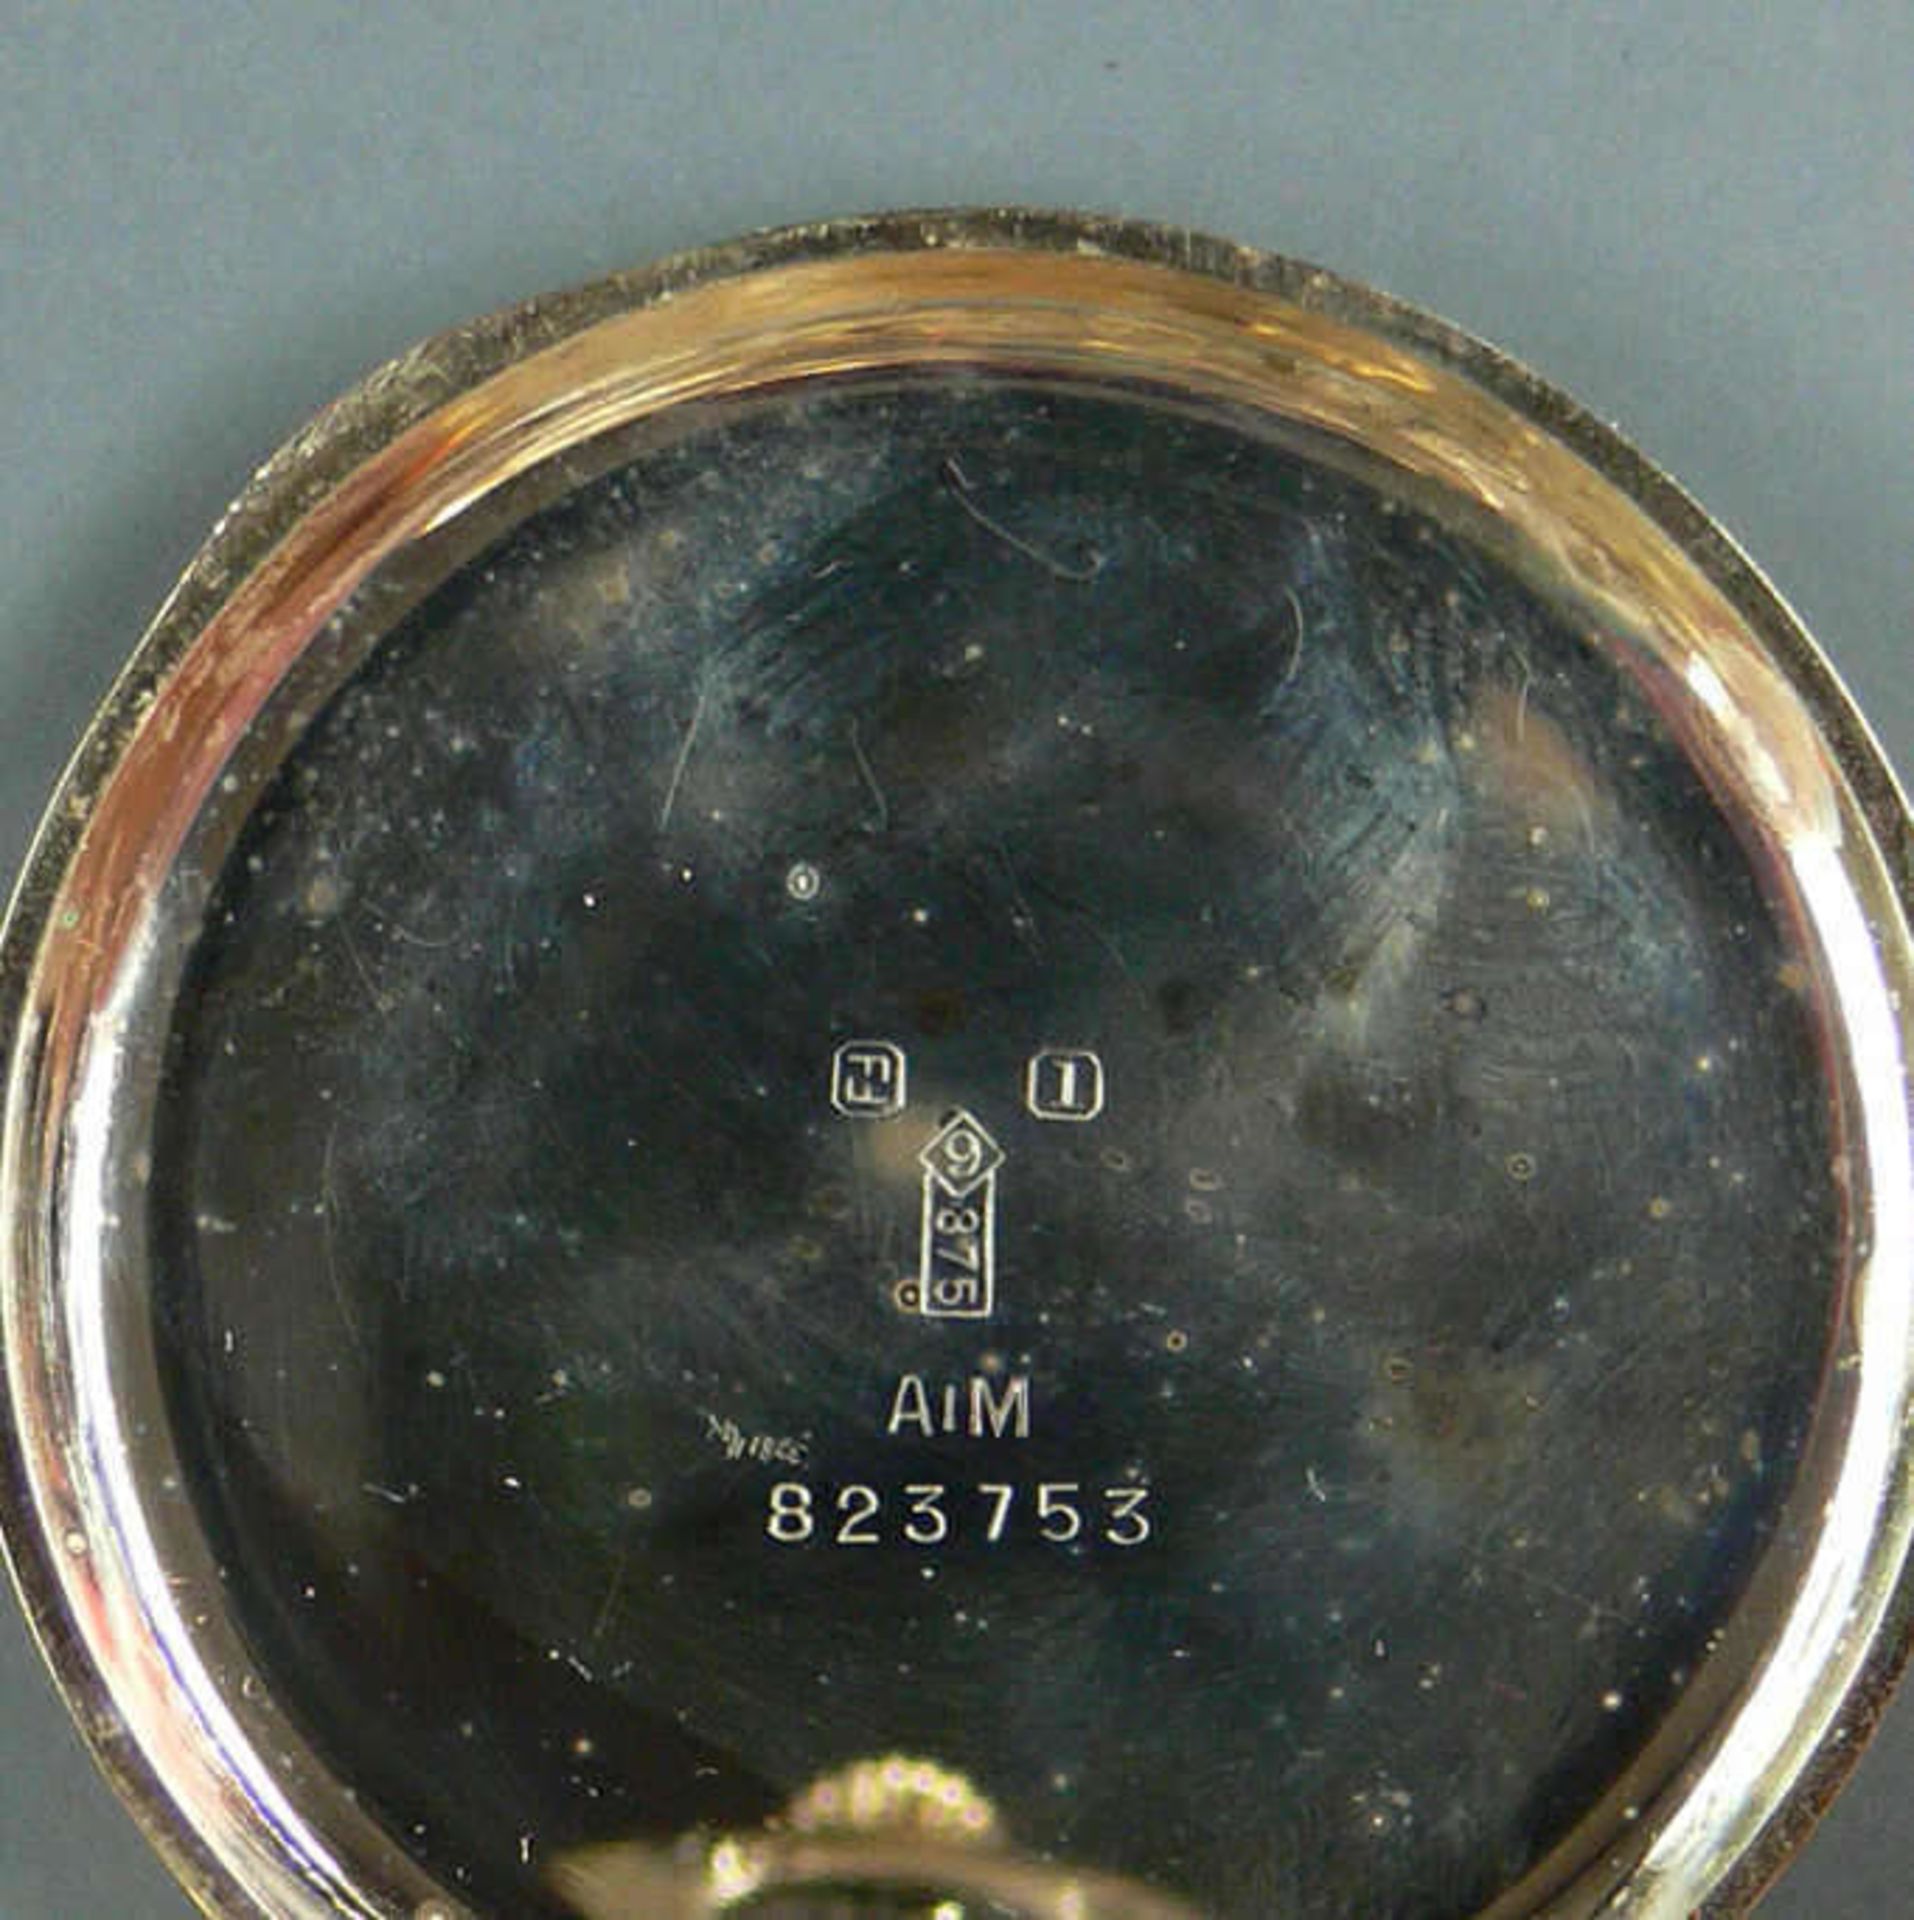 375er Gold - Taschenuhr. Gewicht: ca. 48 g. Uhr läuft nicht an. Innenzahnrad bezeichnet "Marwin". - Bild 4 aus 5